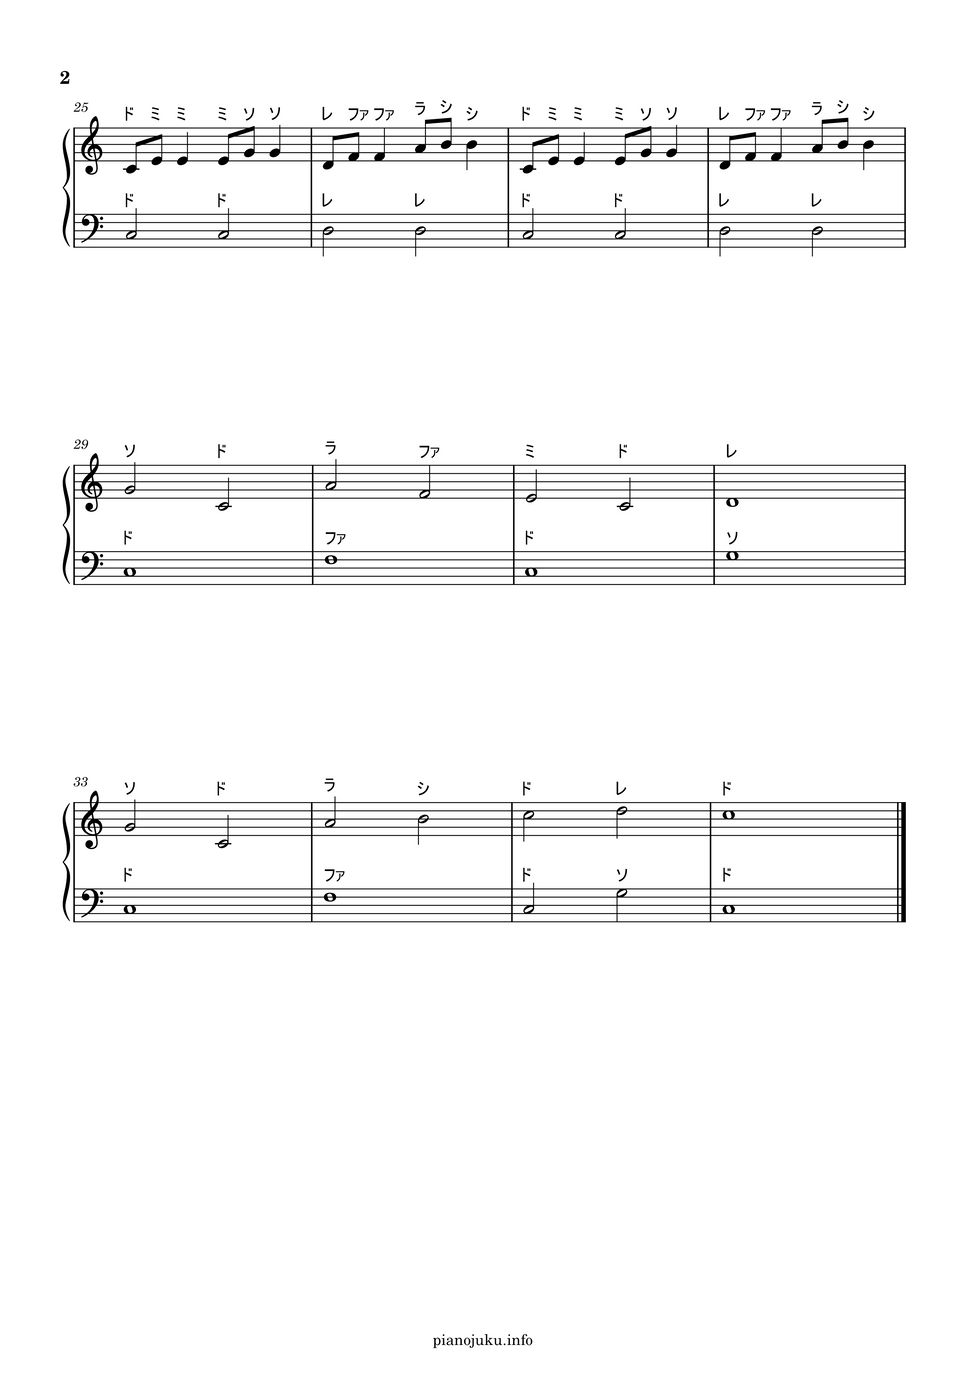 ドレミの歌 (ドレミ付き簡単楽譜) by ピアノ塾